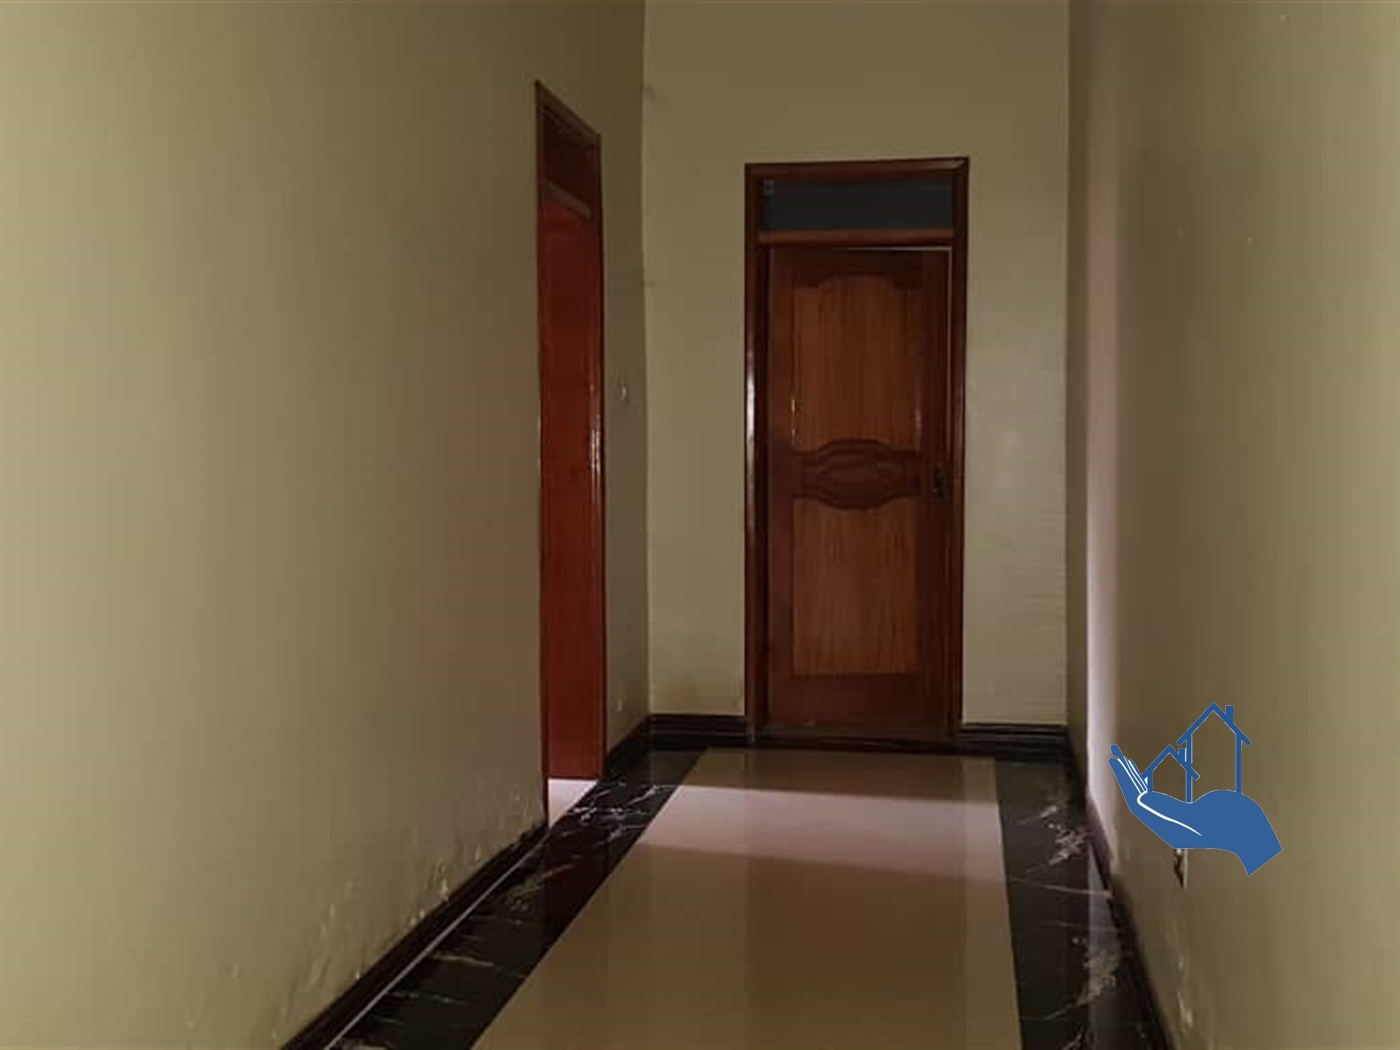 Corridor (Hallway)